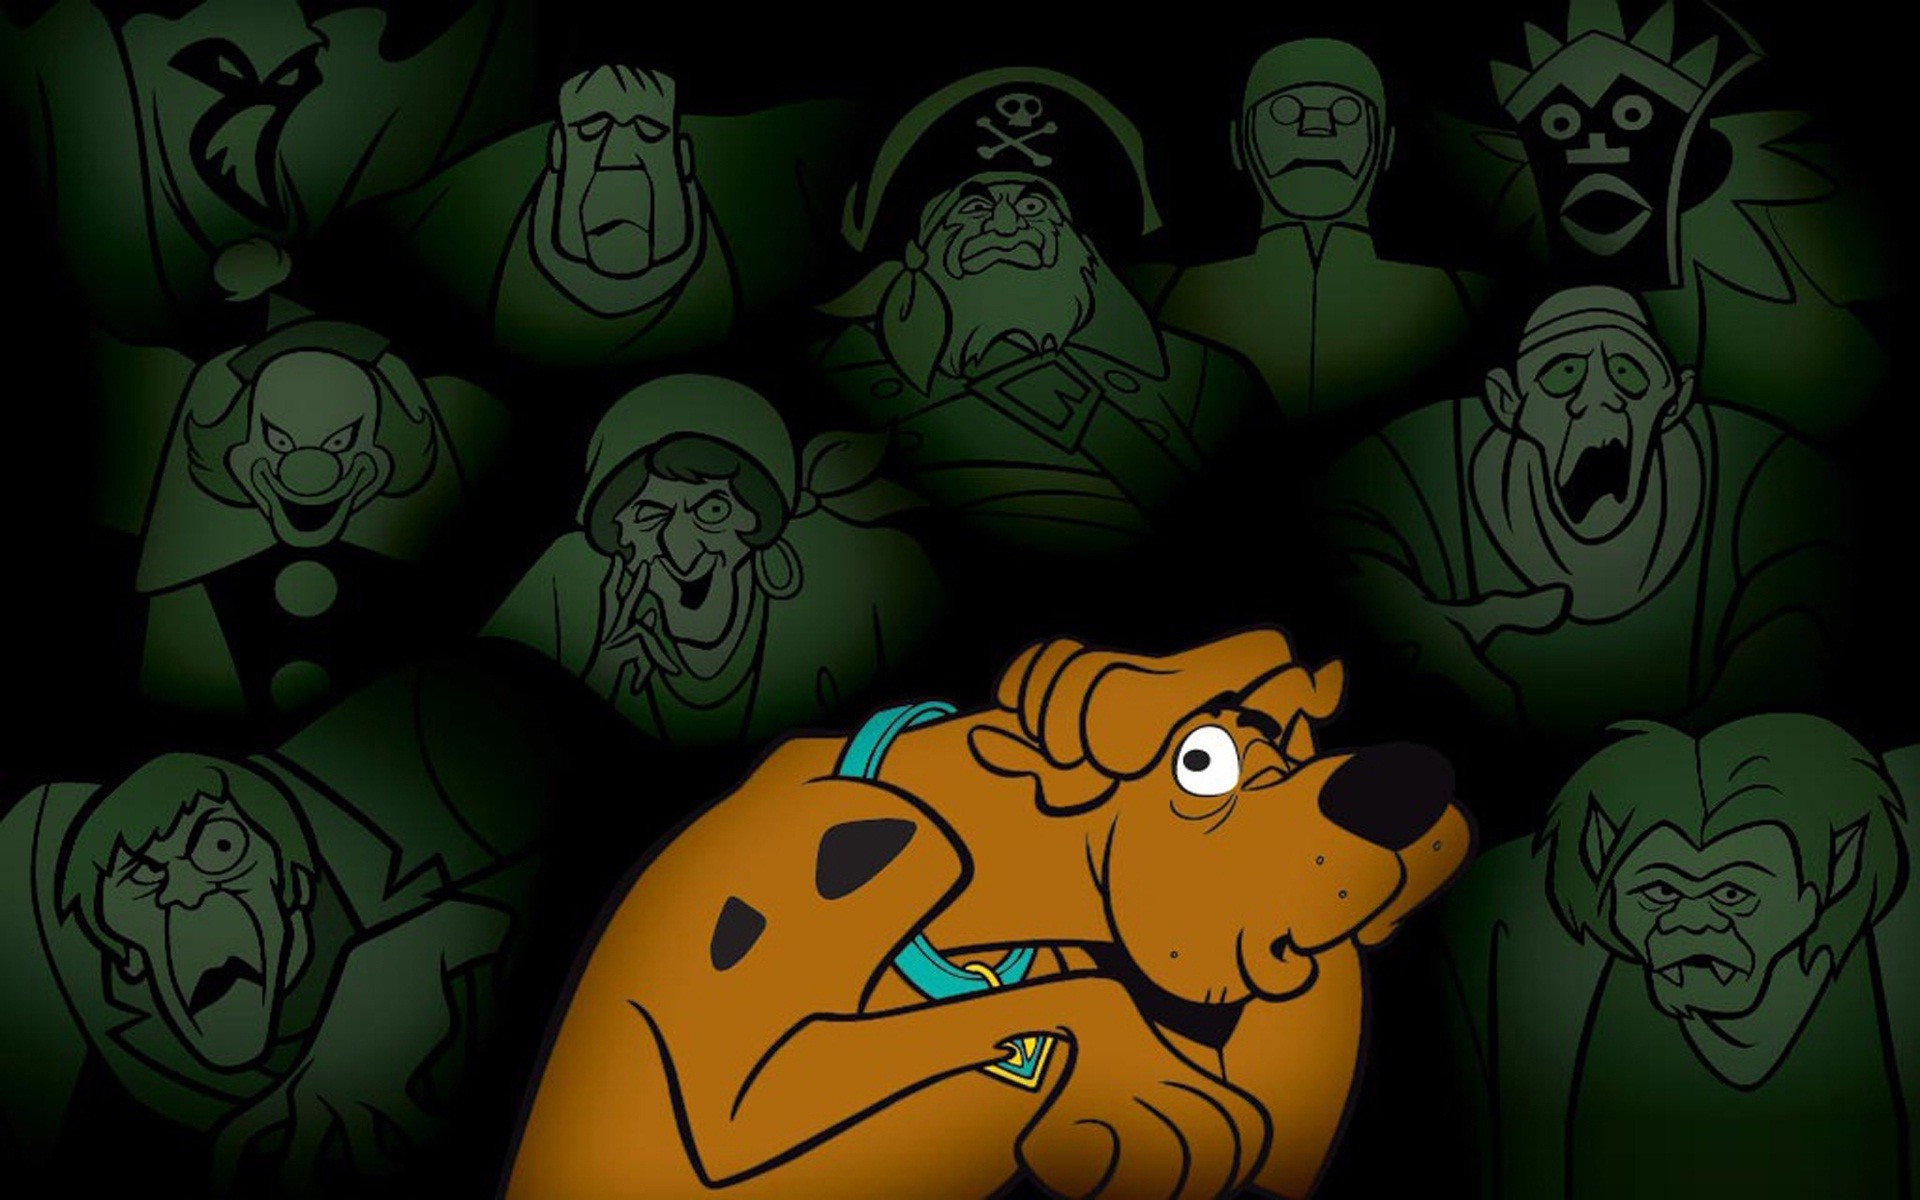 Scooby Doo wallpaper by Xwalls  Download on ZEDGE  86c7